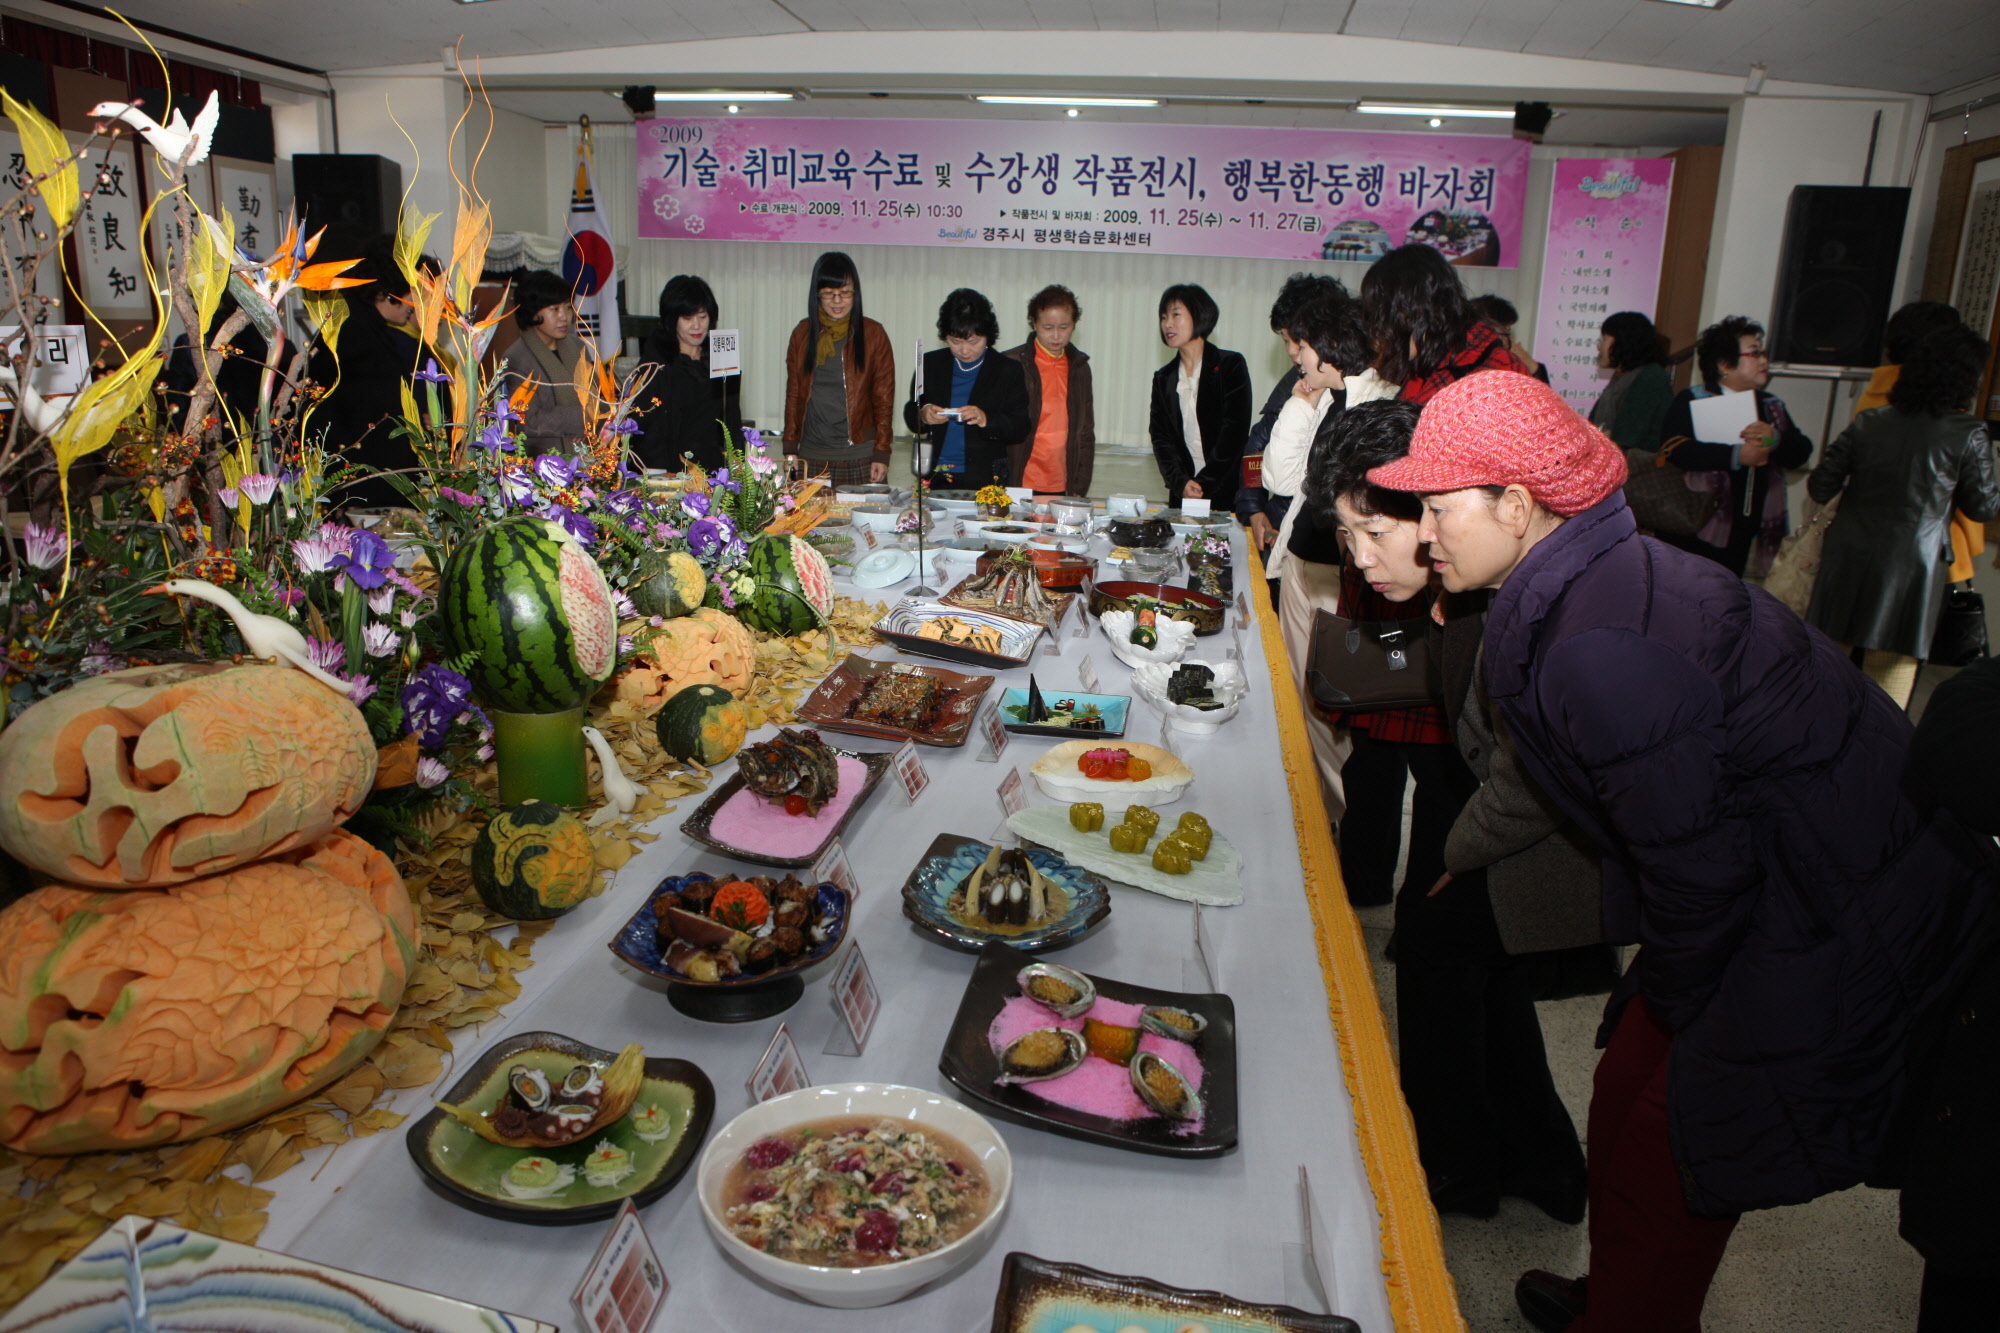 2009 기술.취미교육 수료식 및 수강생 작품전시, 행복한동행 바자회 개최 